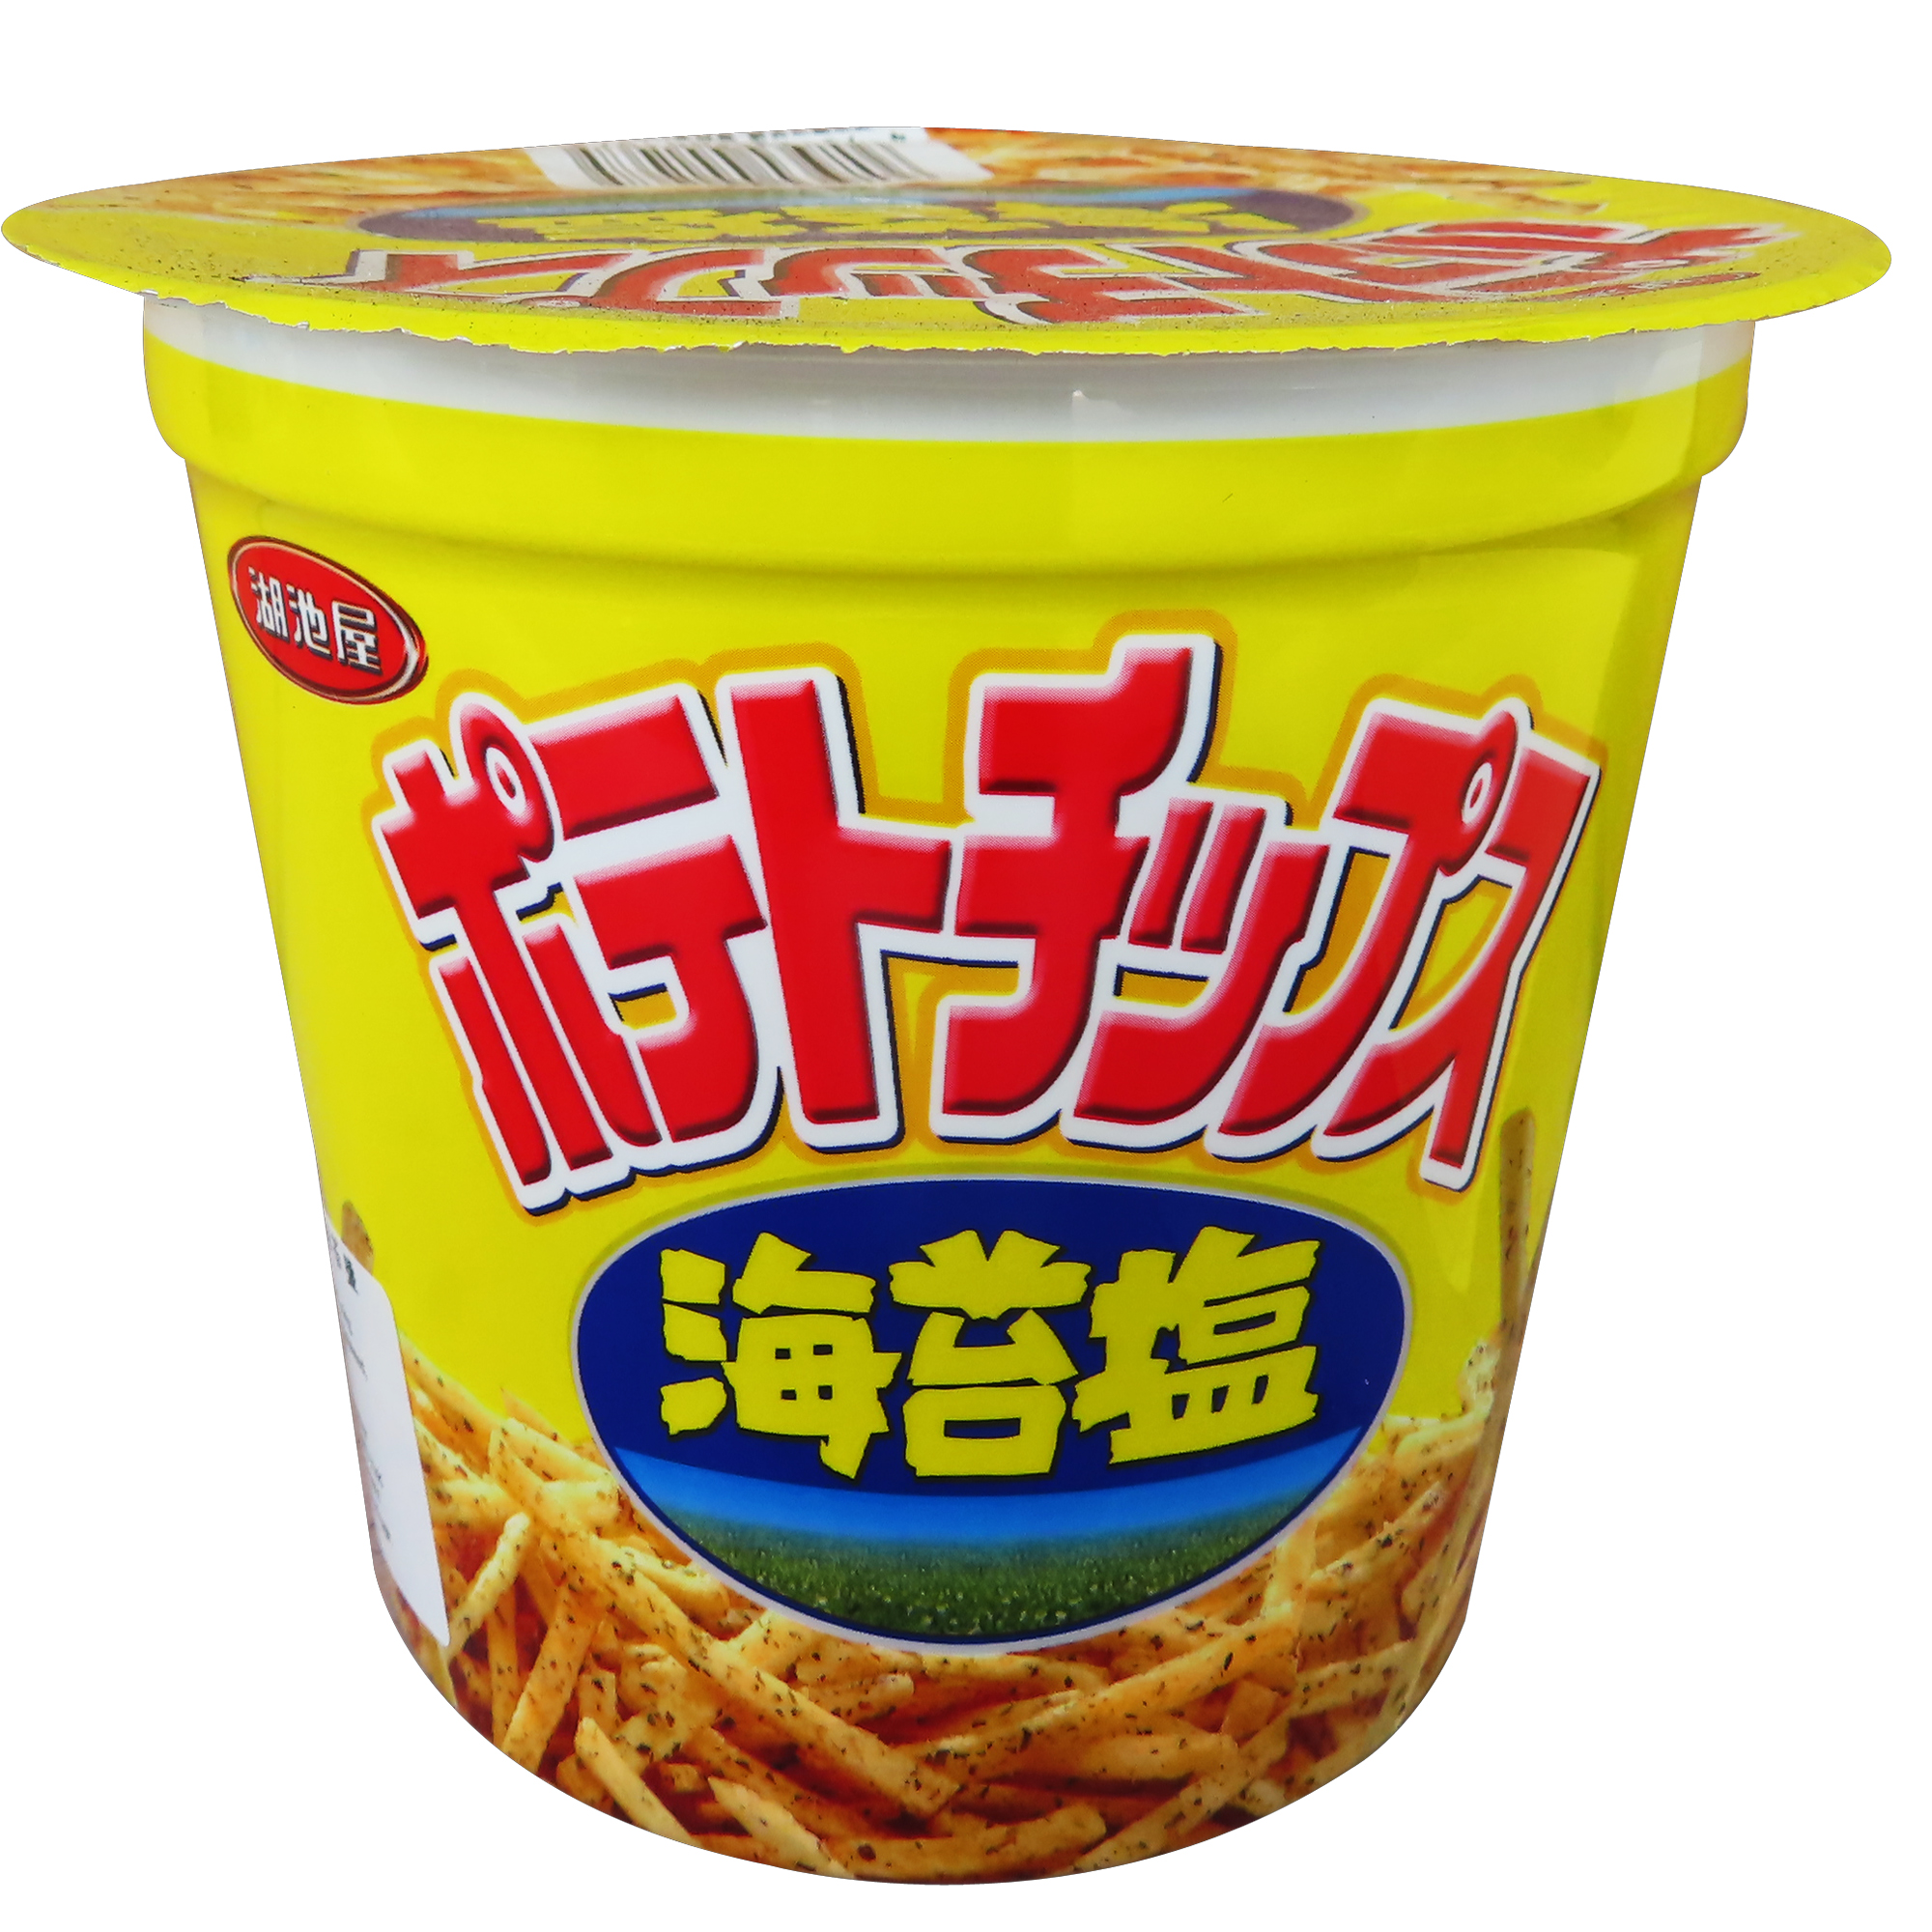 Image Koikeya Potato Fries 湖池屋 - 海苔盐薯条 /海苔盐洋芋条 (杯) 64grams